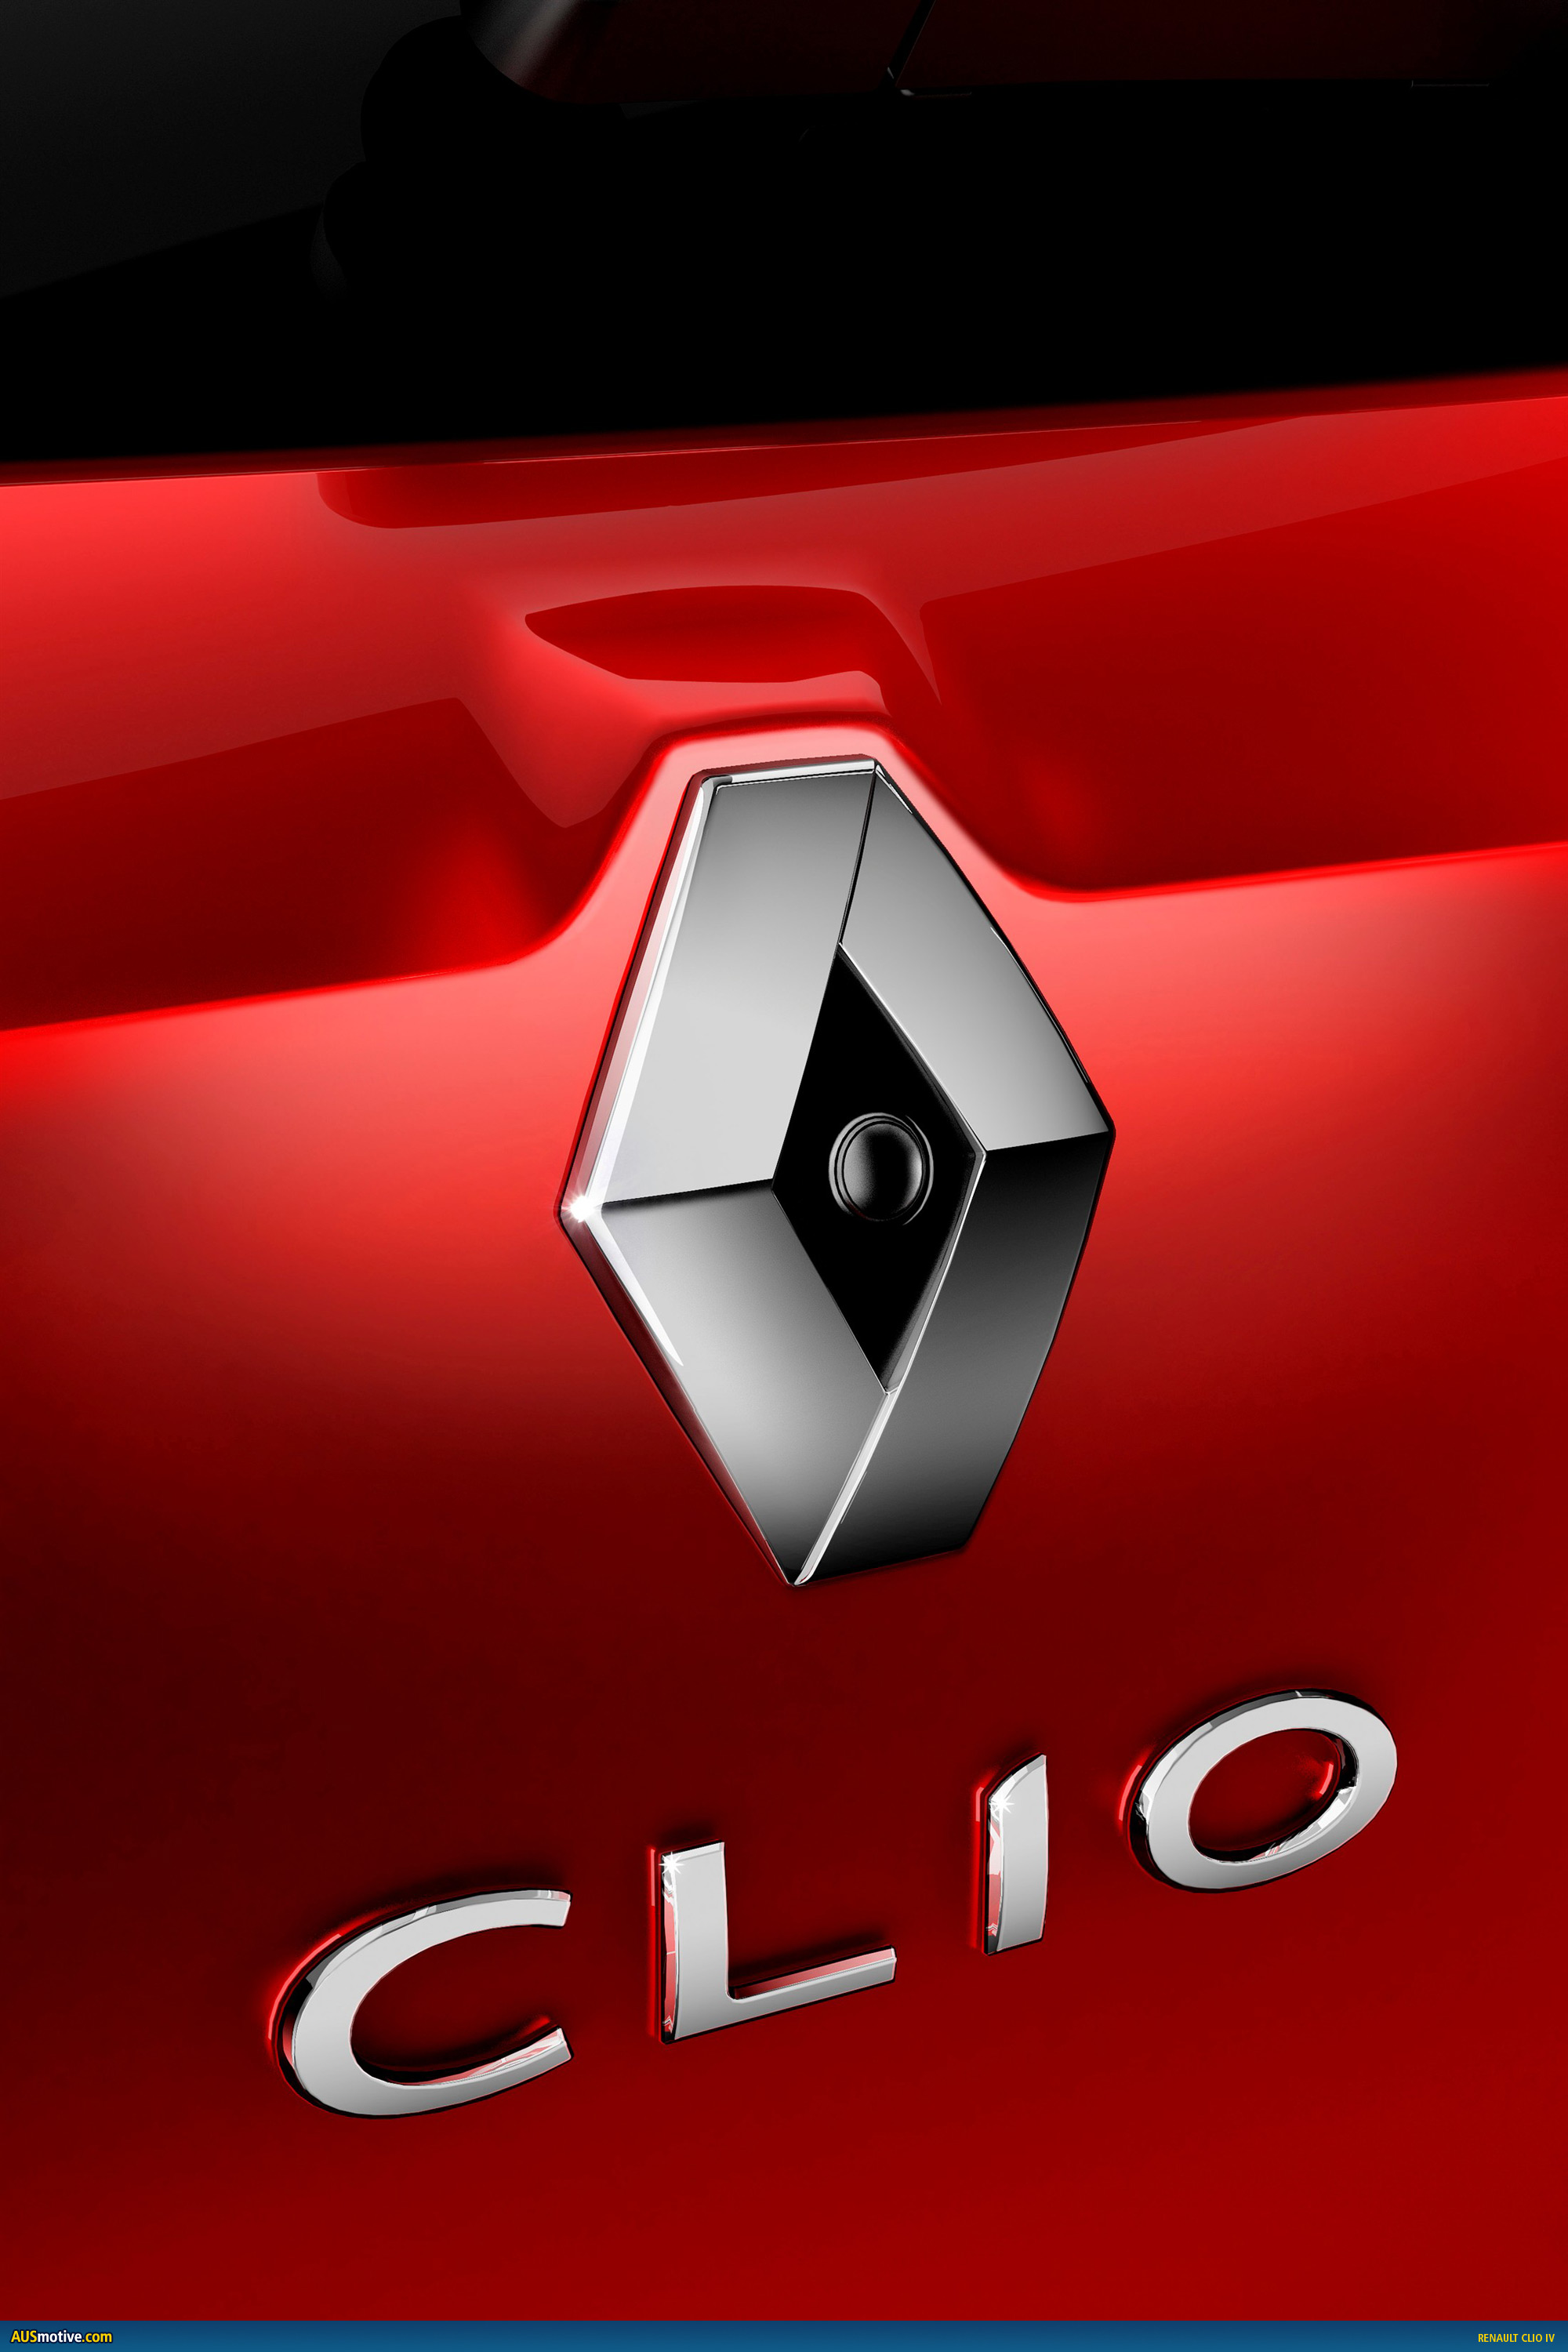 2013 Renault Clio IV revealed –